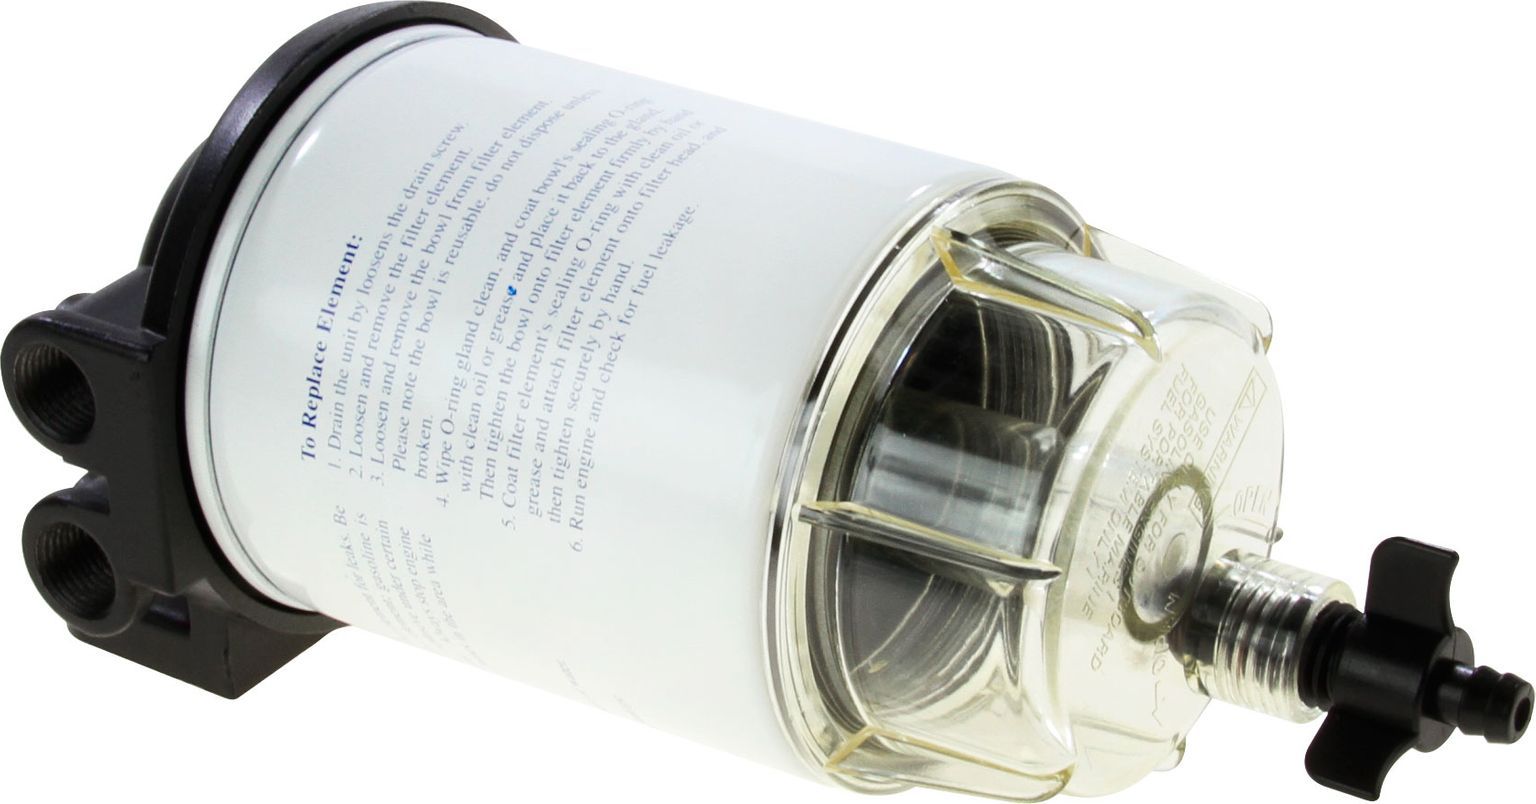 Фильтр топливный 10 мк с креплением, водосборником и двумя запасными вставками (малый) C14573P_komp - фото 2